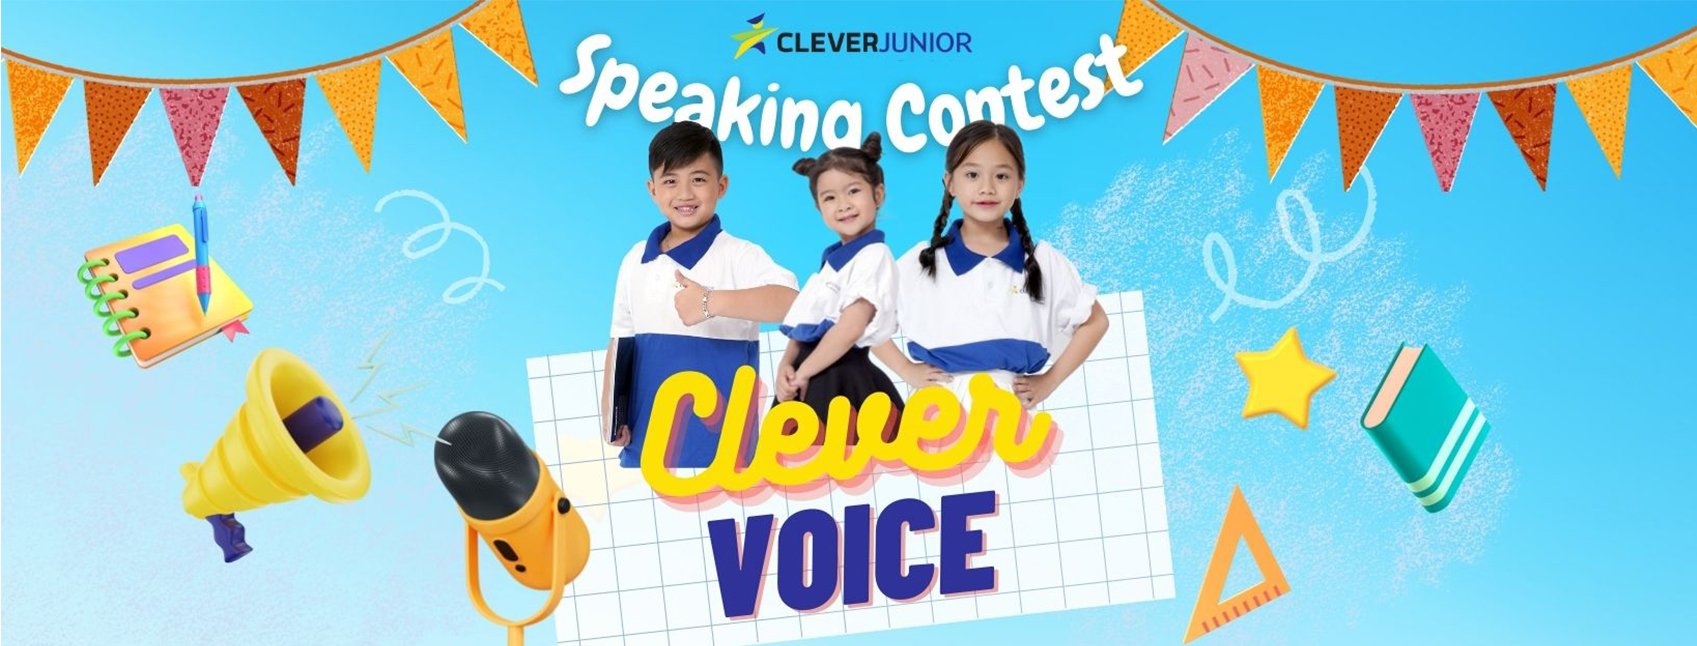 Khởi động mùa 1 cuộc thi “CLEVER VOICE” dành cho các bạn nhỏ thông minh